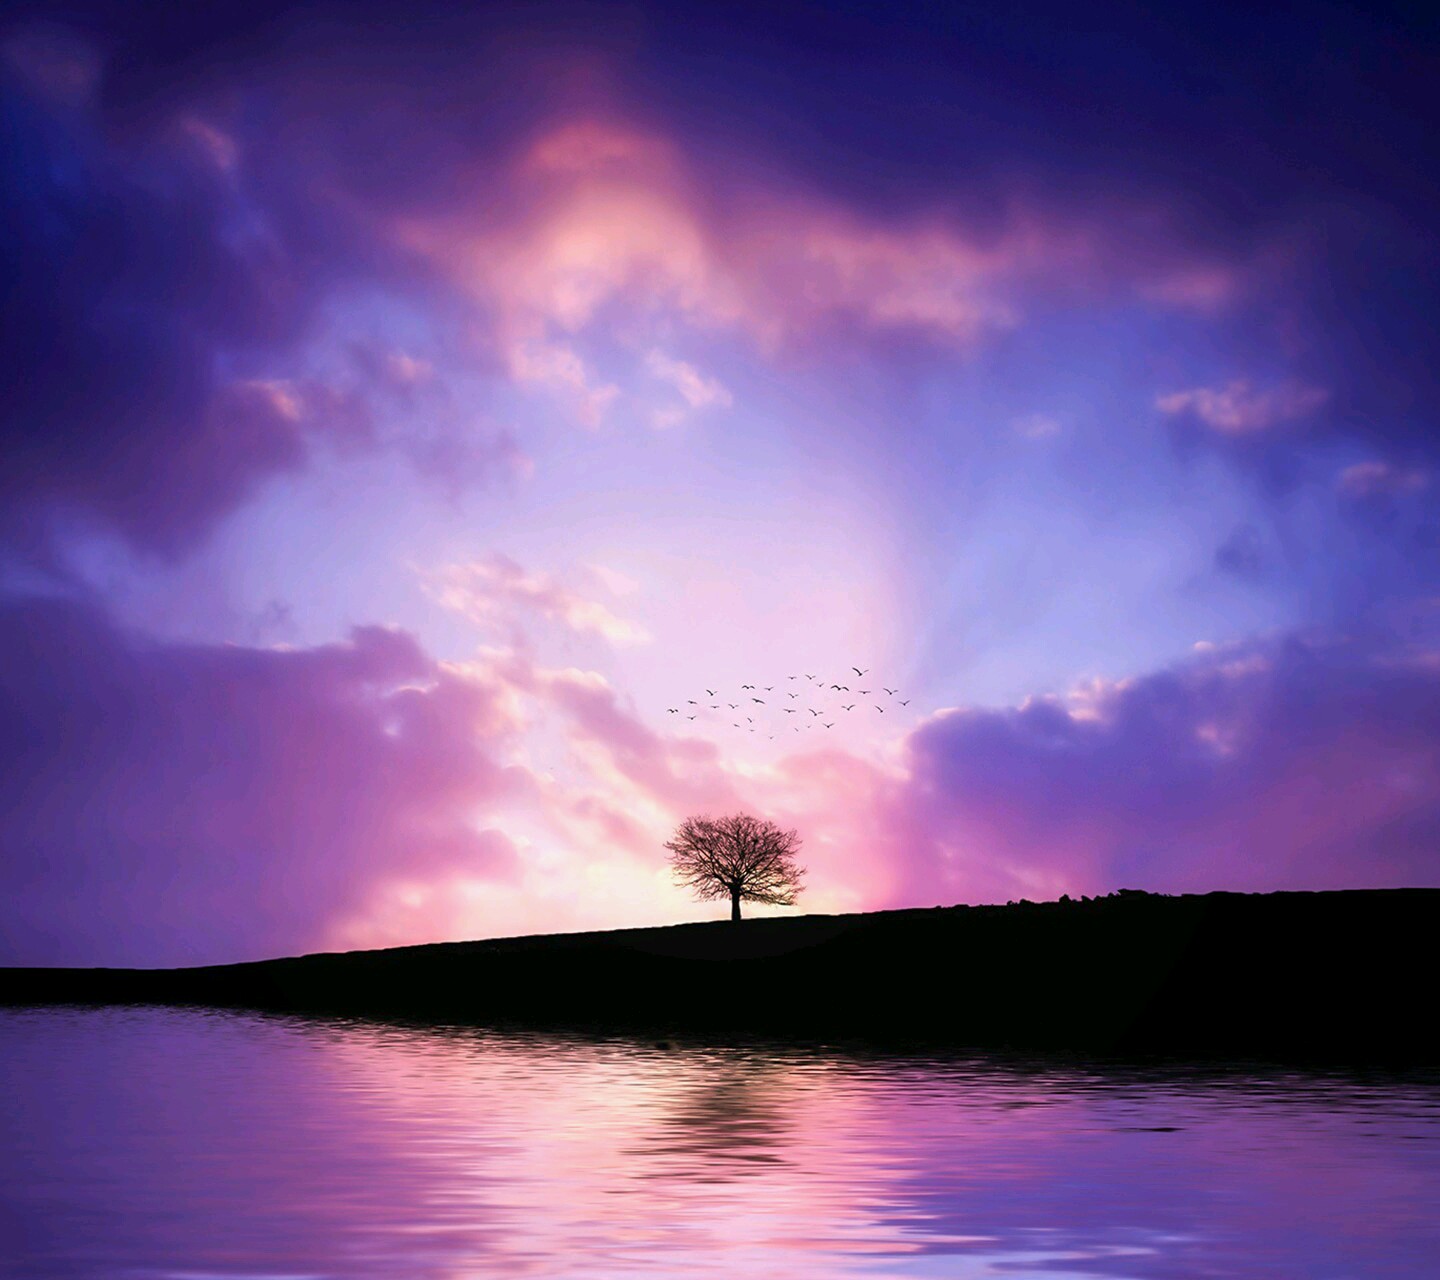 Фиолетовый закат